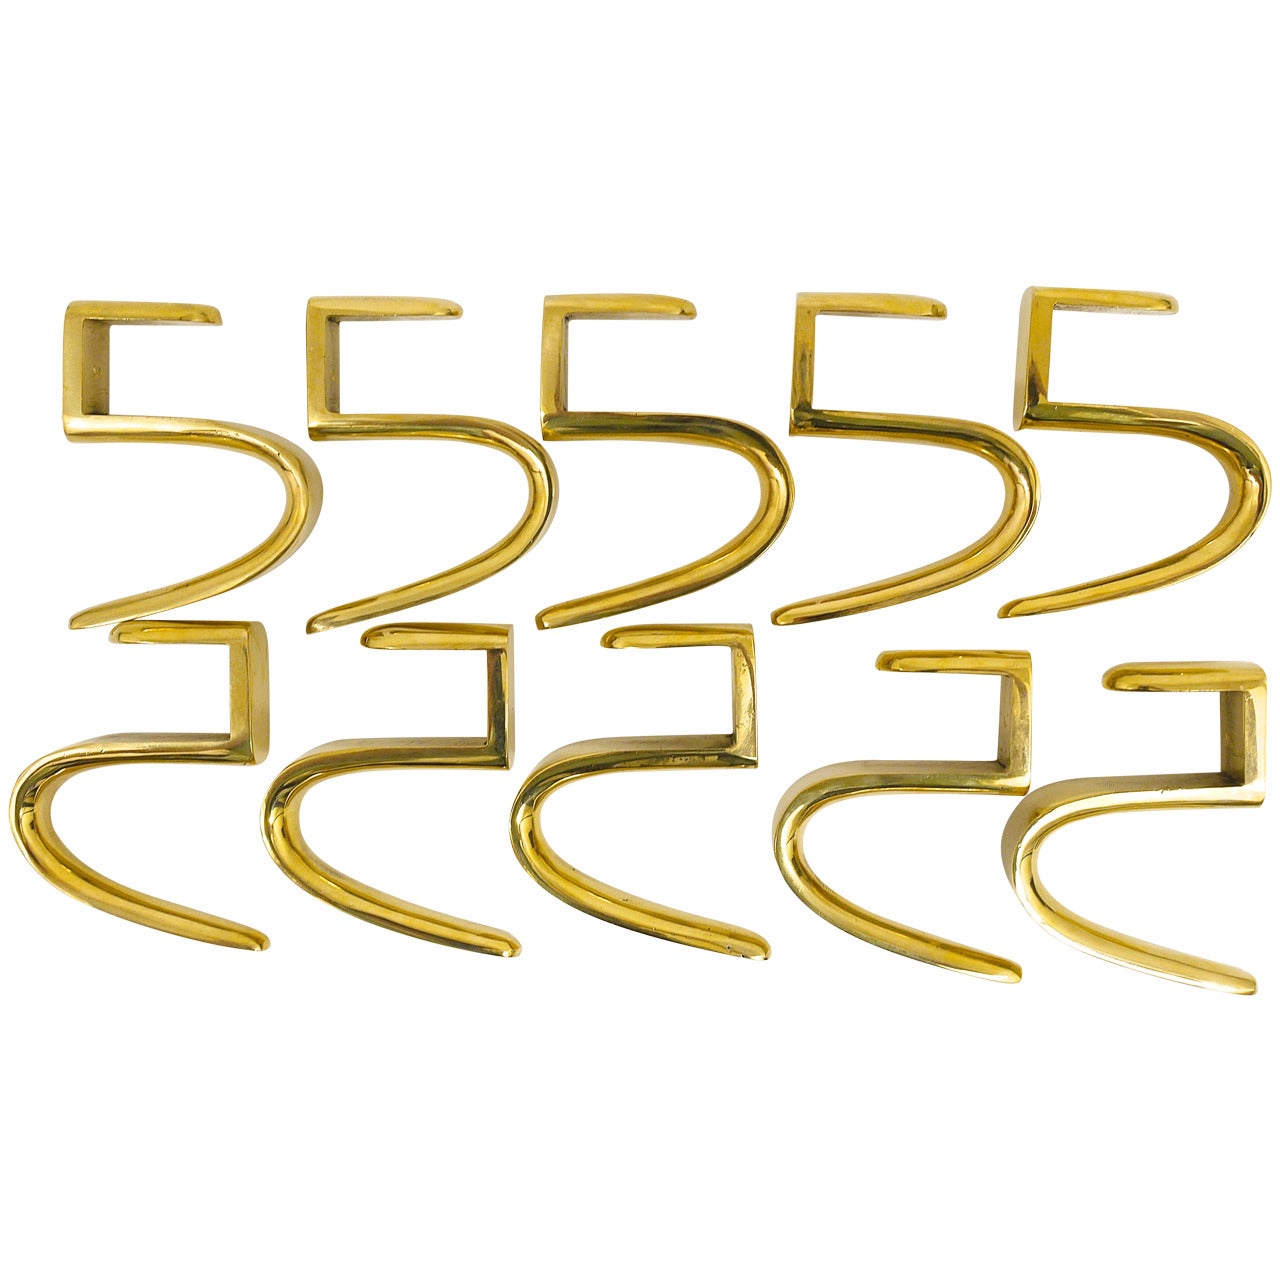 The Carl Aubock 5-Shaped Brass Hooks for the Wooden Coat Rack, Austria (Dix crochets en laiton à 5 formes pour le porte-manteau en bois, Autriche)